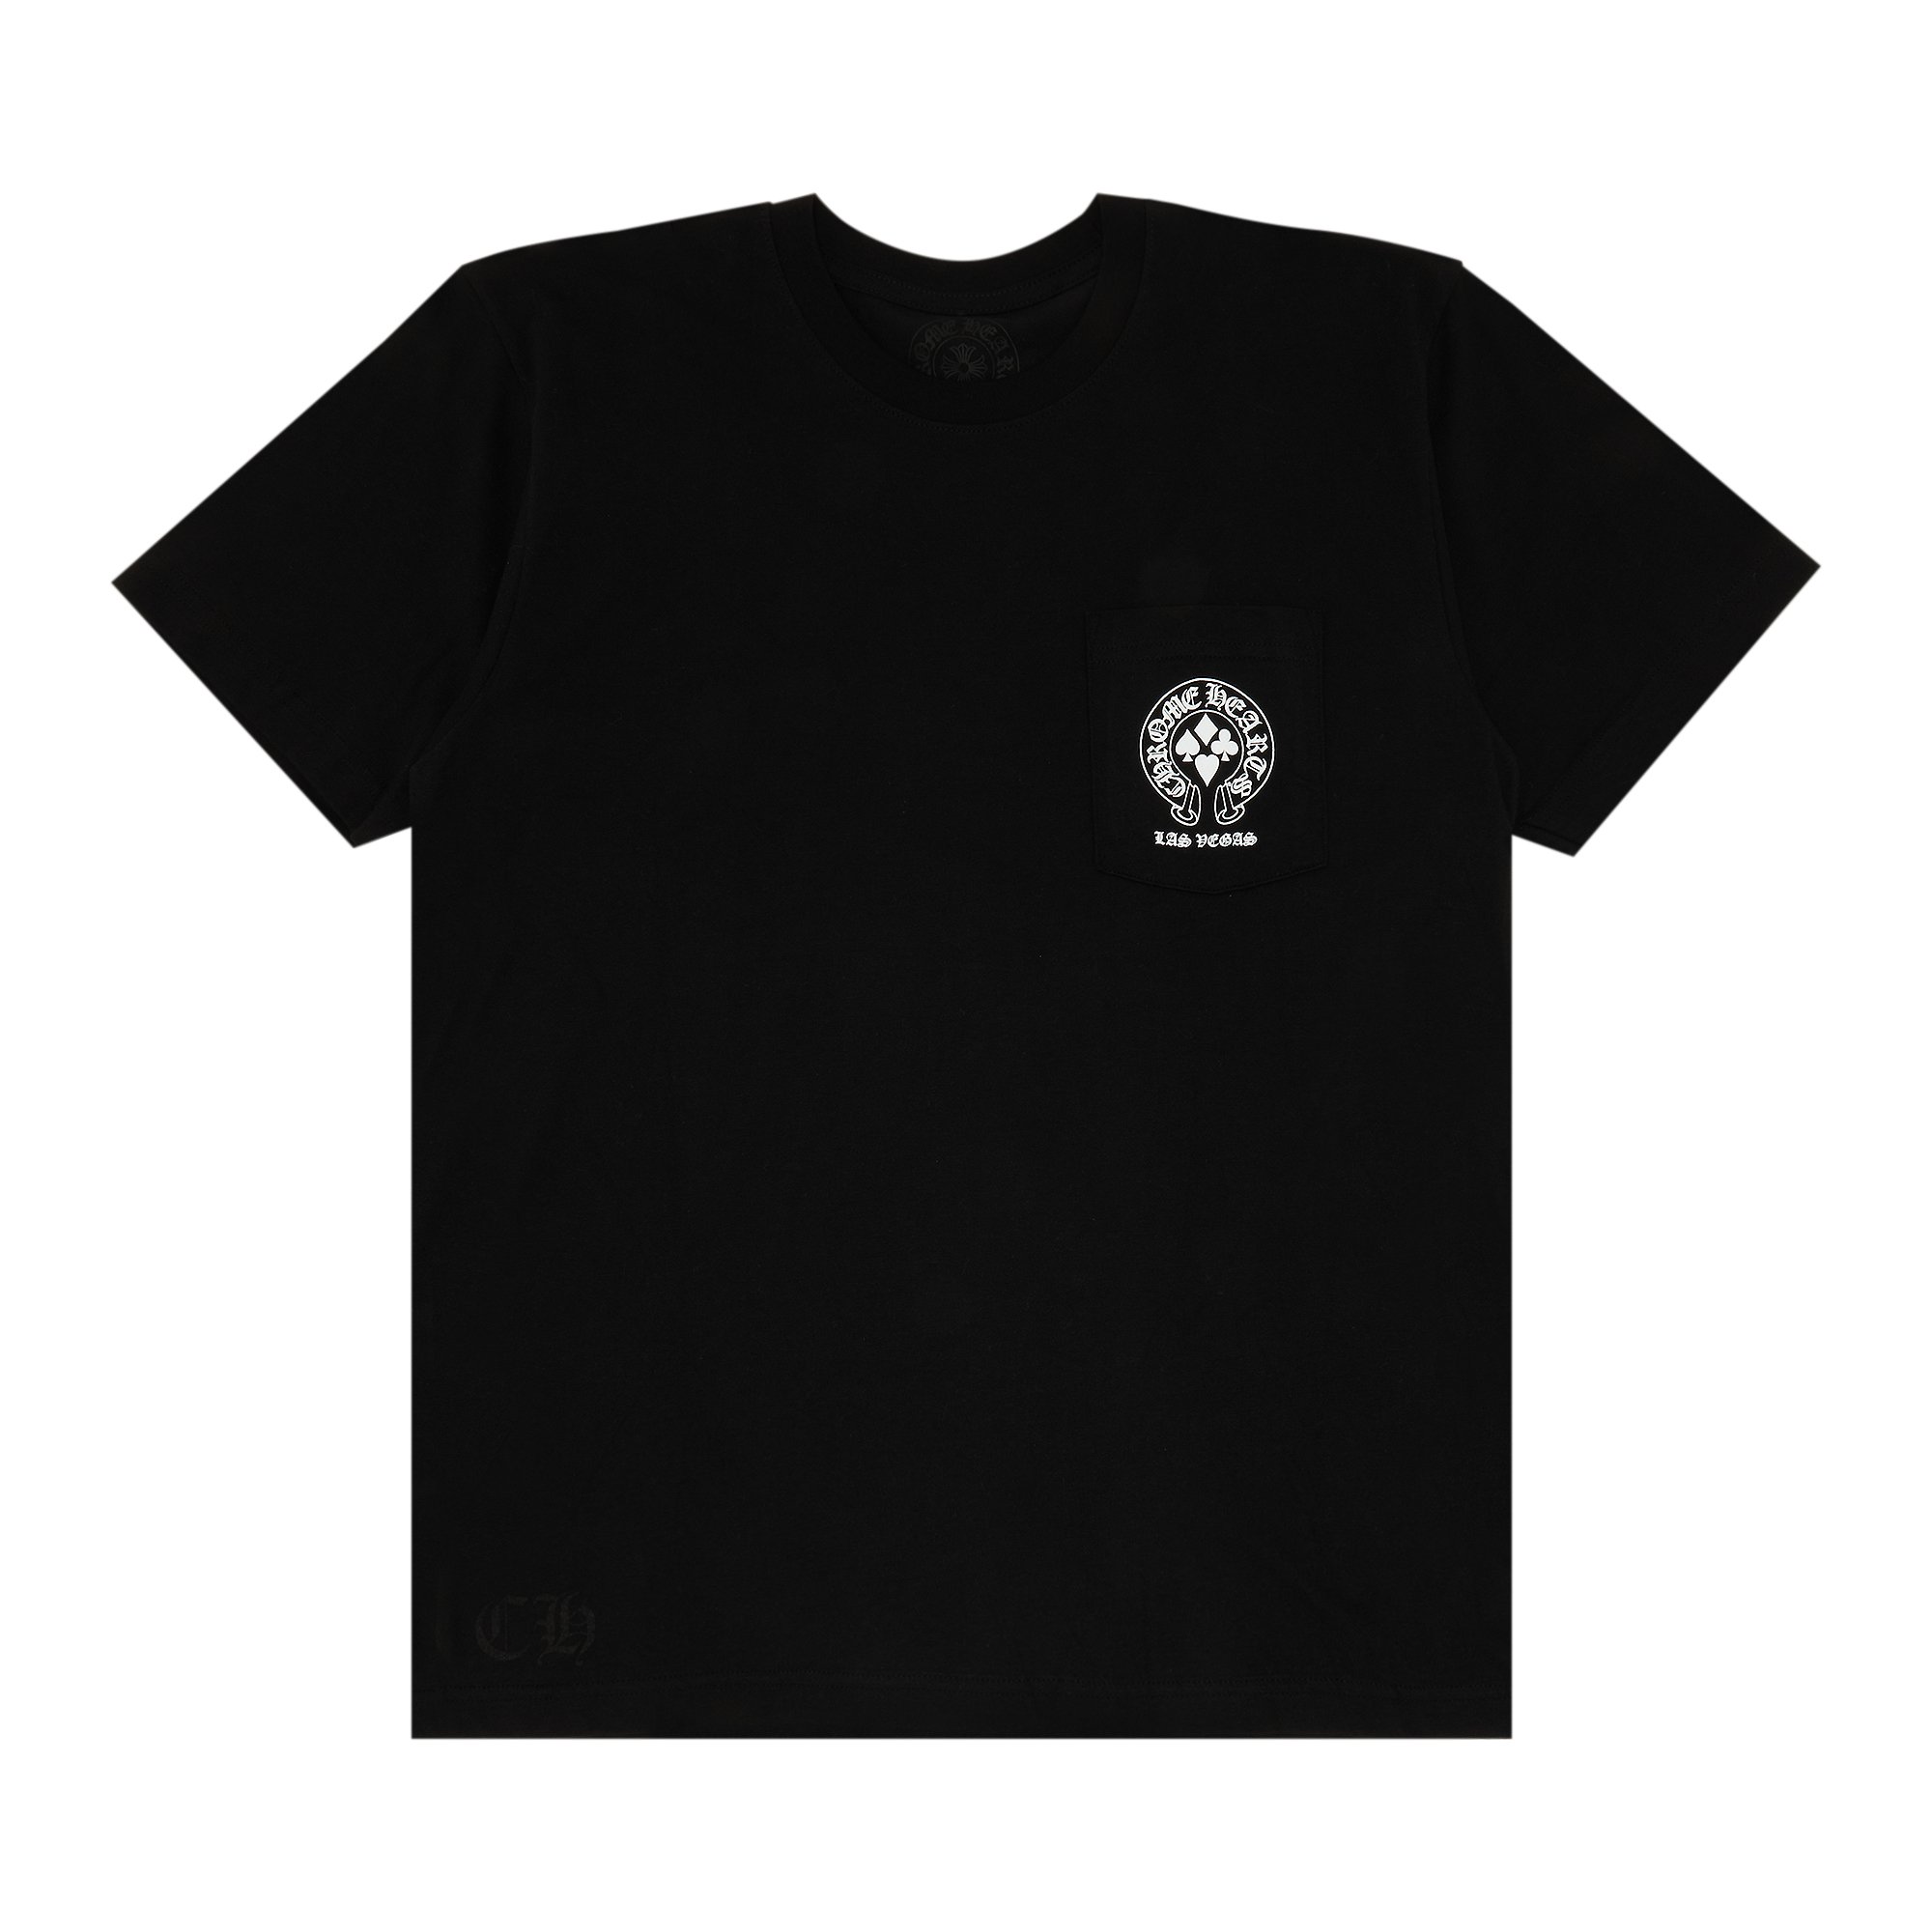 Эксклюзивная футболка Chrome Hearts Las Vegas, черная